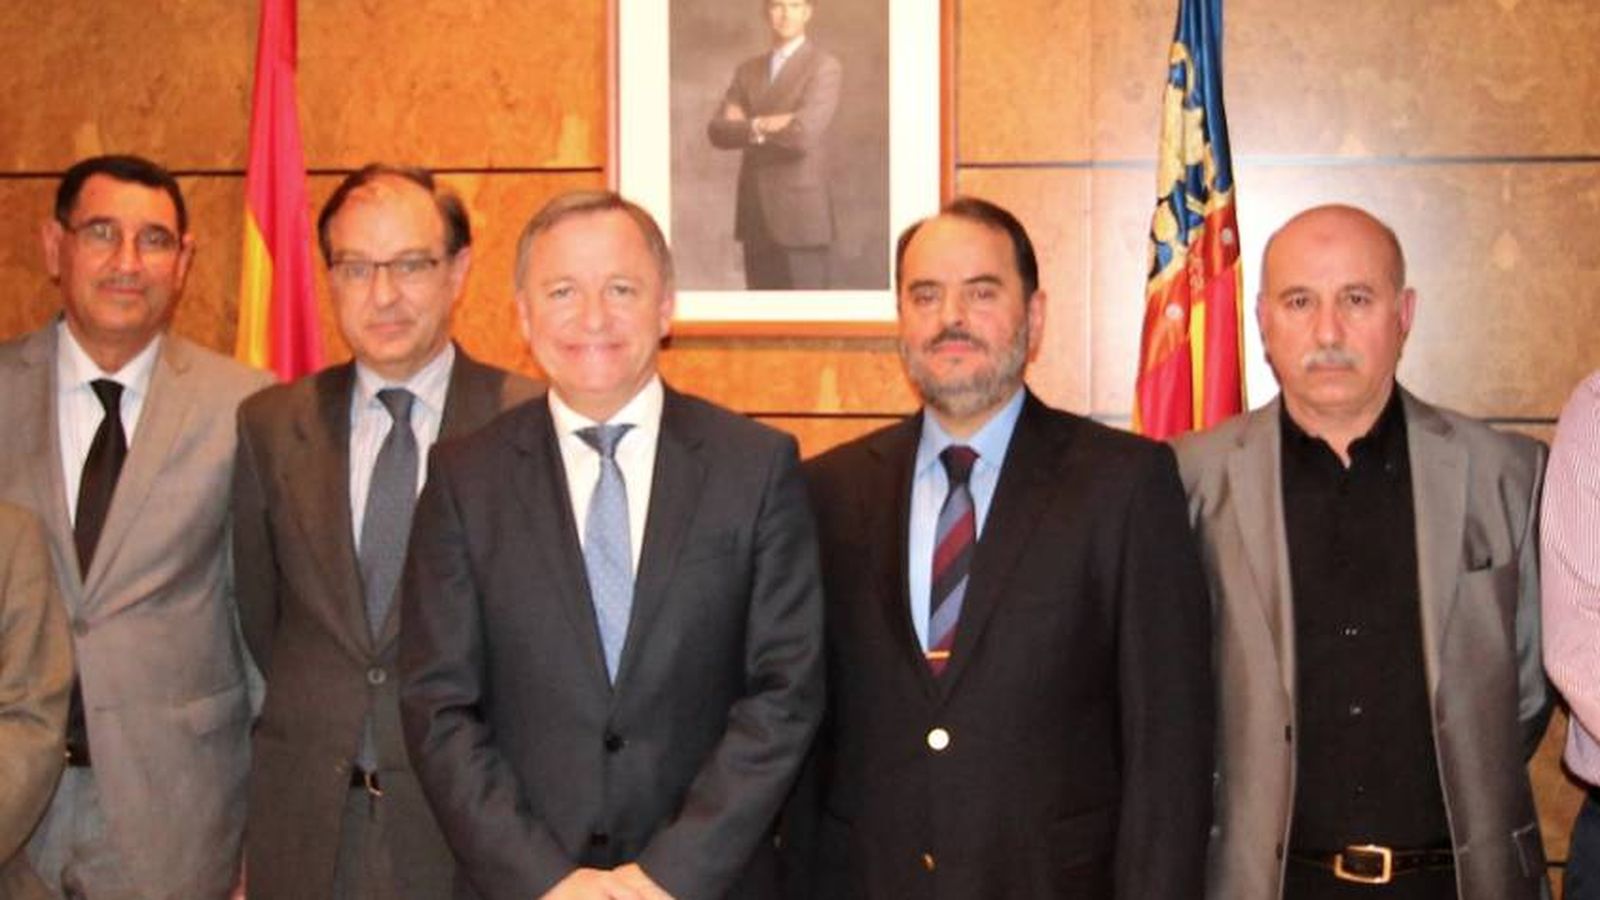 Foto: Imad al Naddaf, segundo por la derecha, en un encuentro en la Delegación del Gobierno de Valencia con otros líderes árabe-musulmanes.